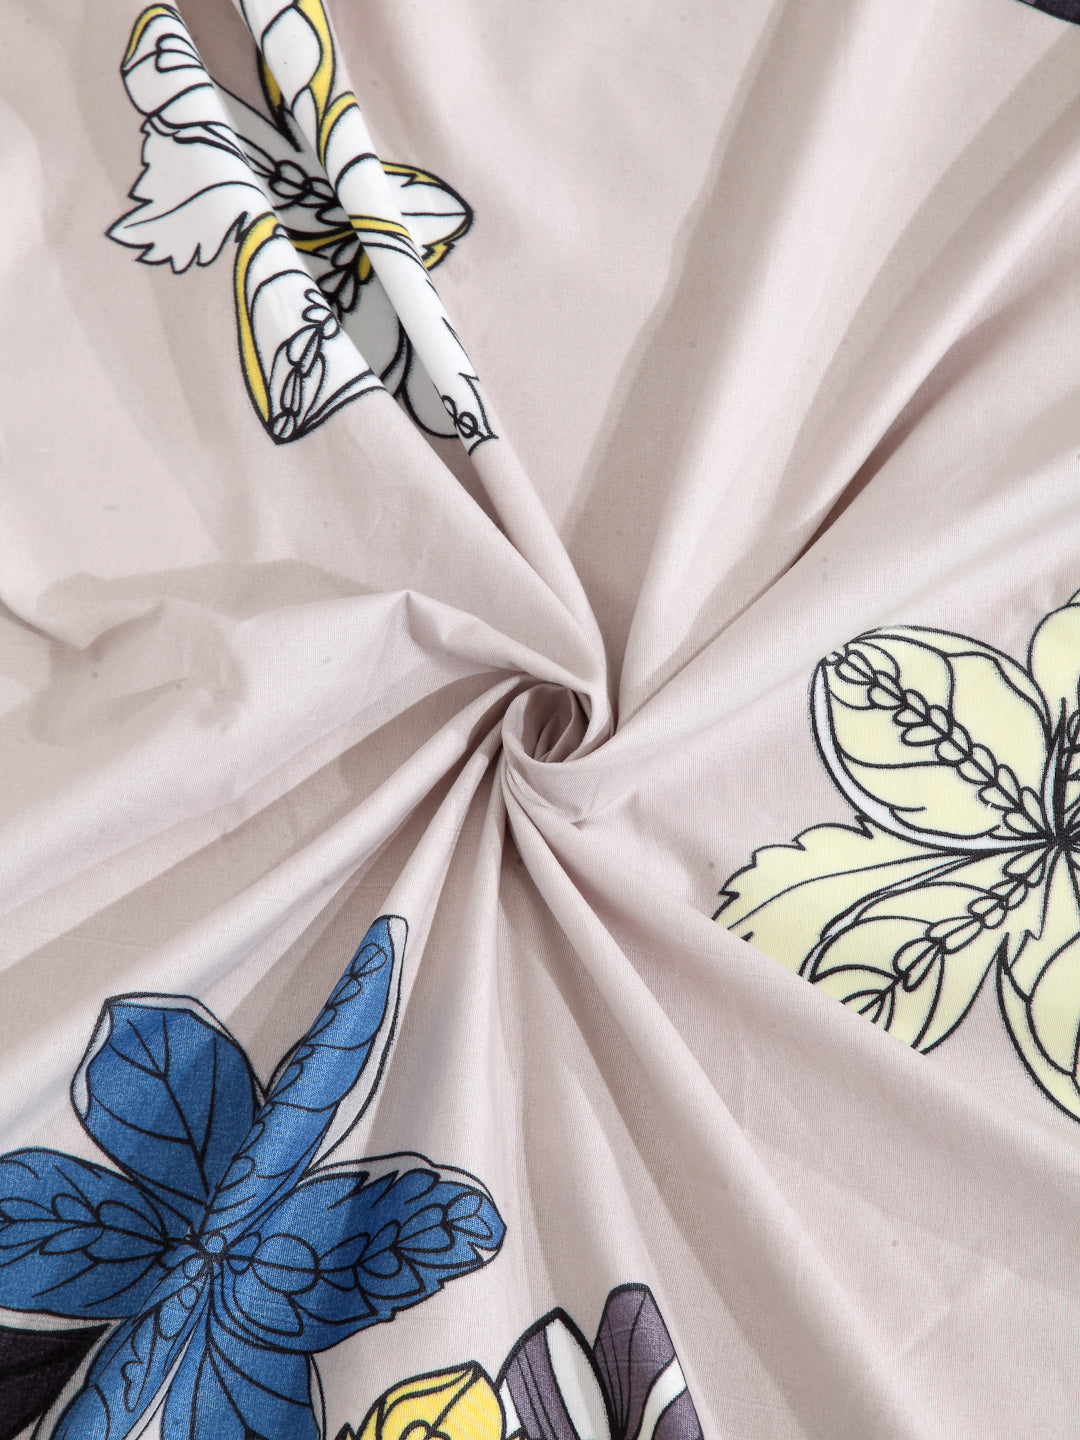 Arrabi Beige Floral Cotton Blend 8 SEATER Table Cover (215 X 150 cm)